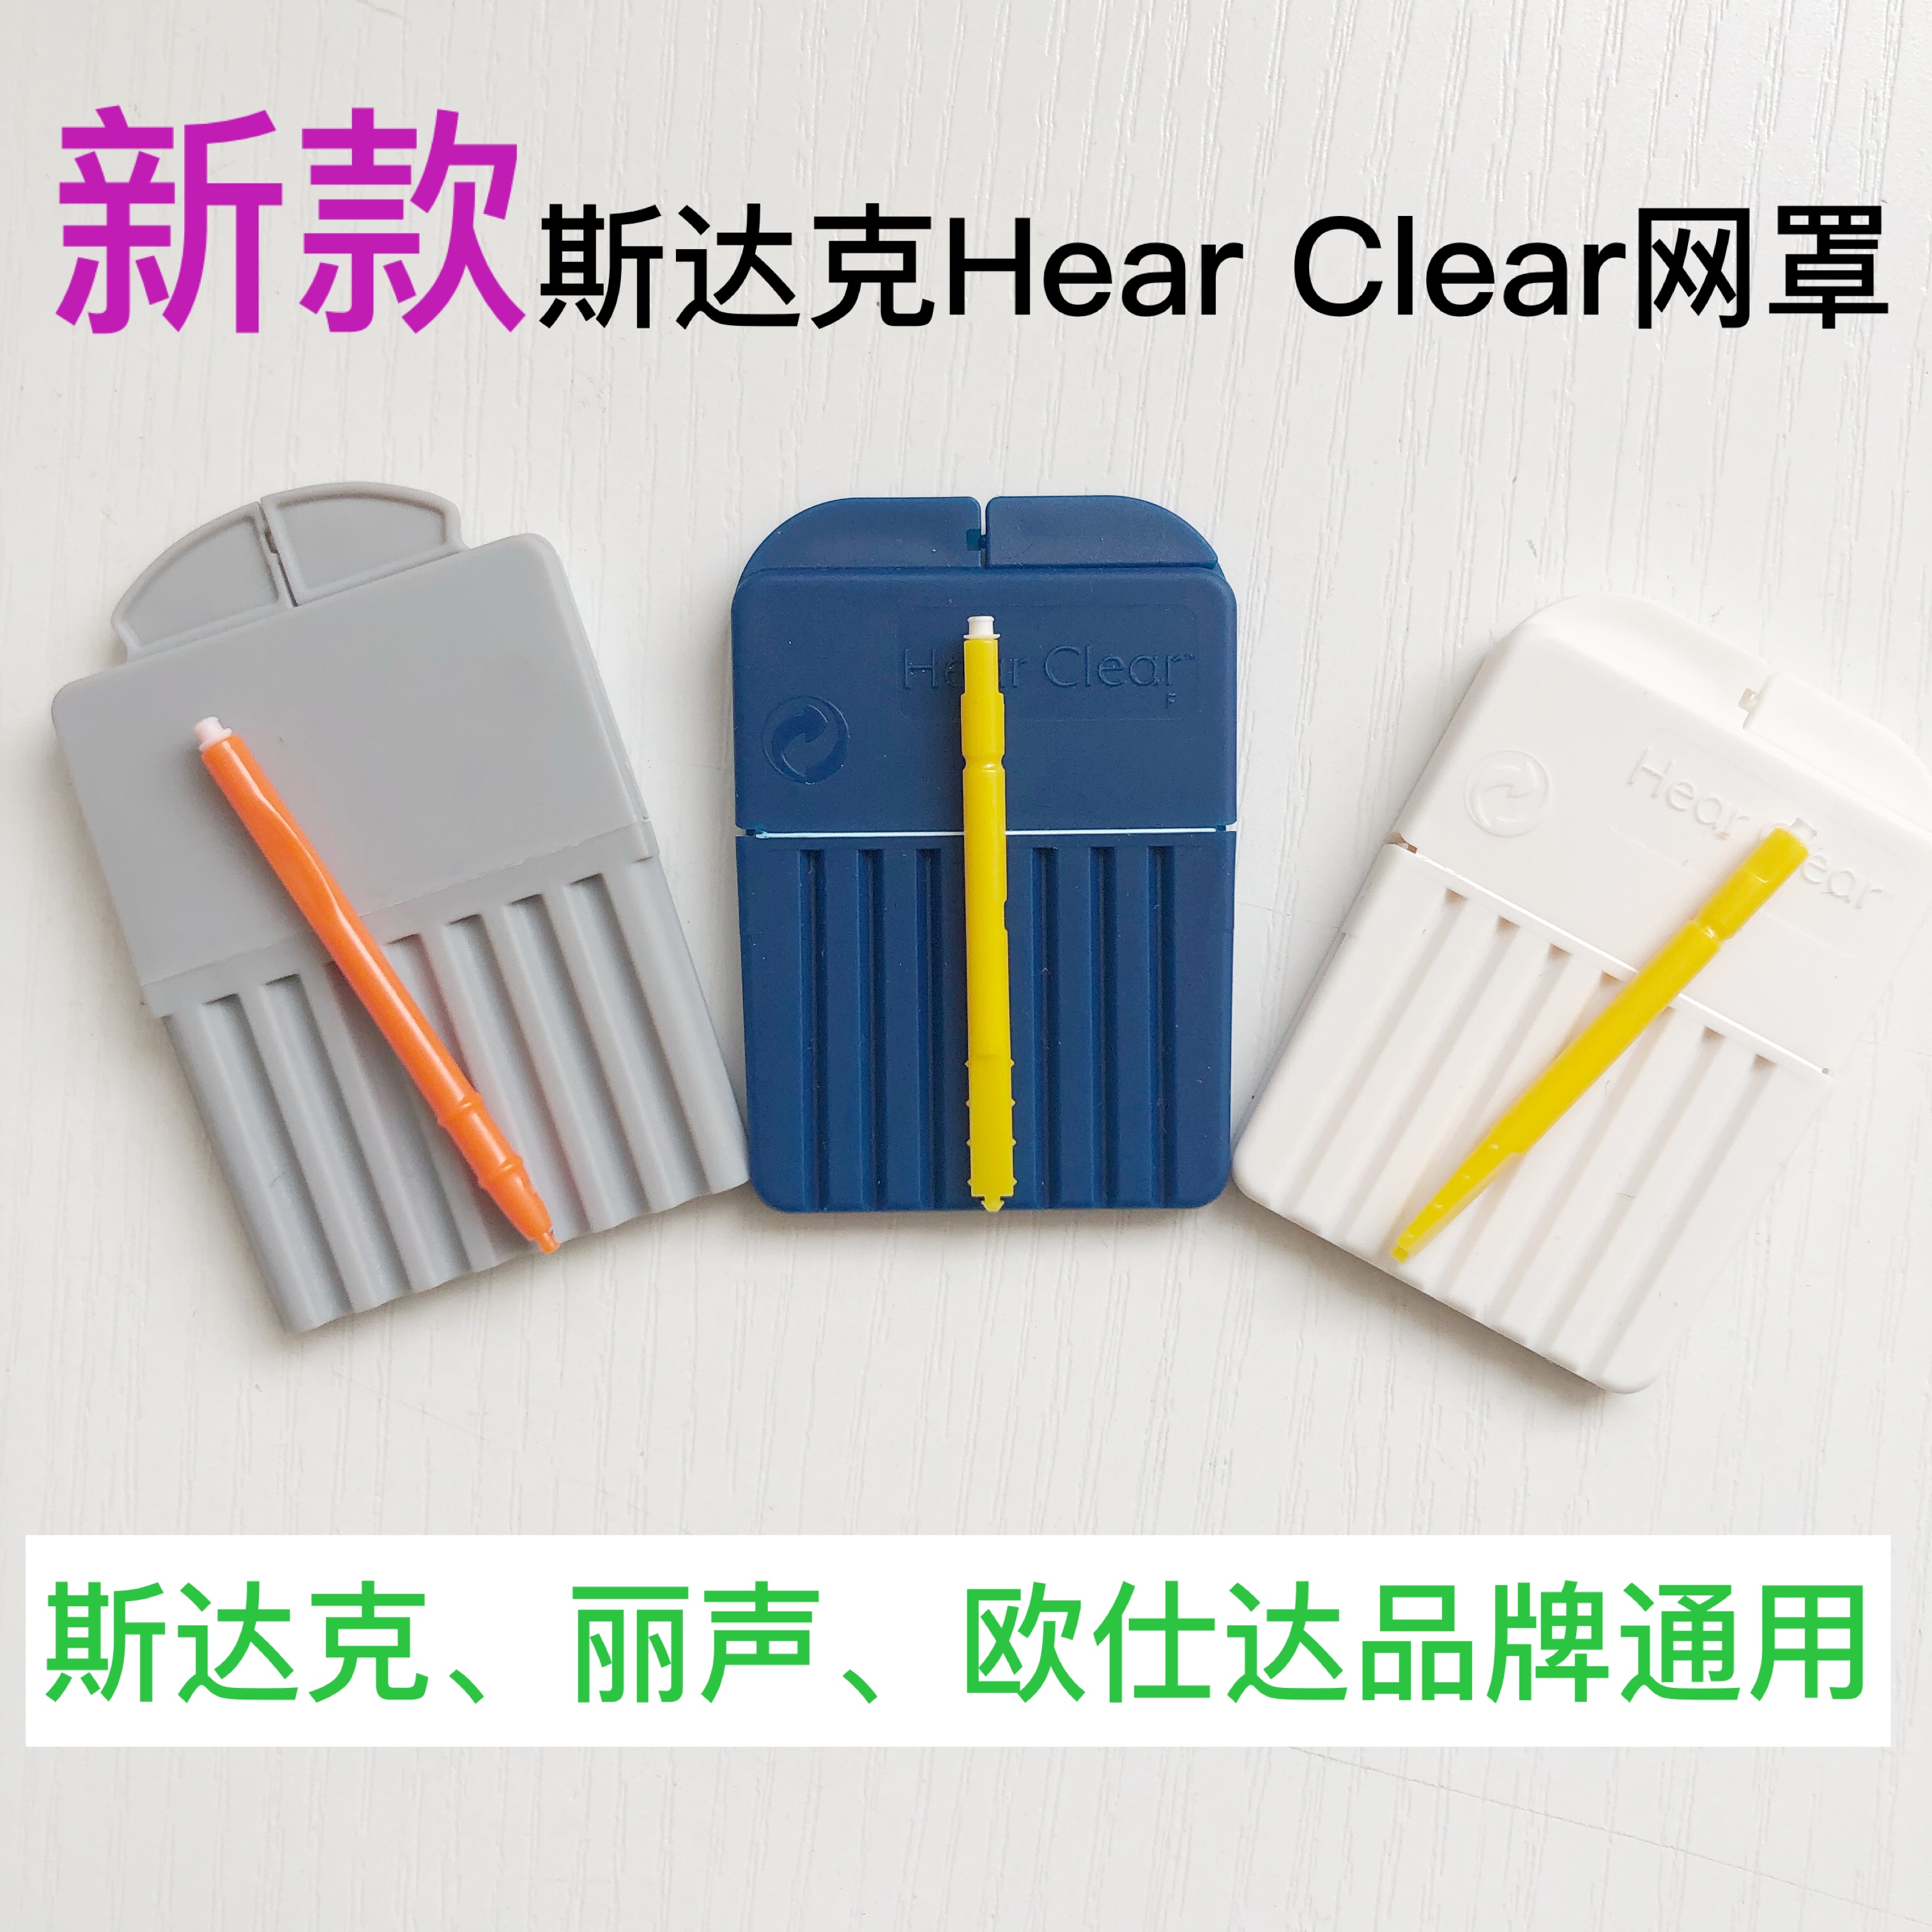 Hear Clear斯达克、丽声、欧仕达助听器耳屎过滤防尘网罩耵聍挡板